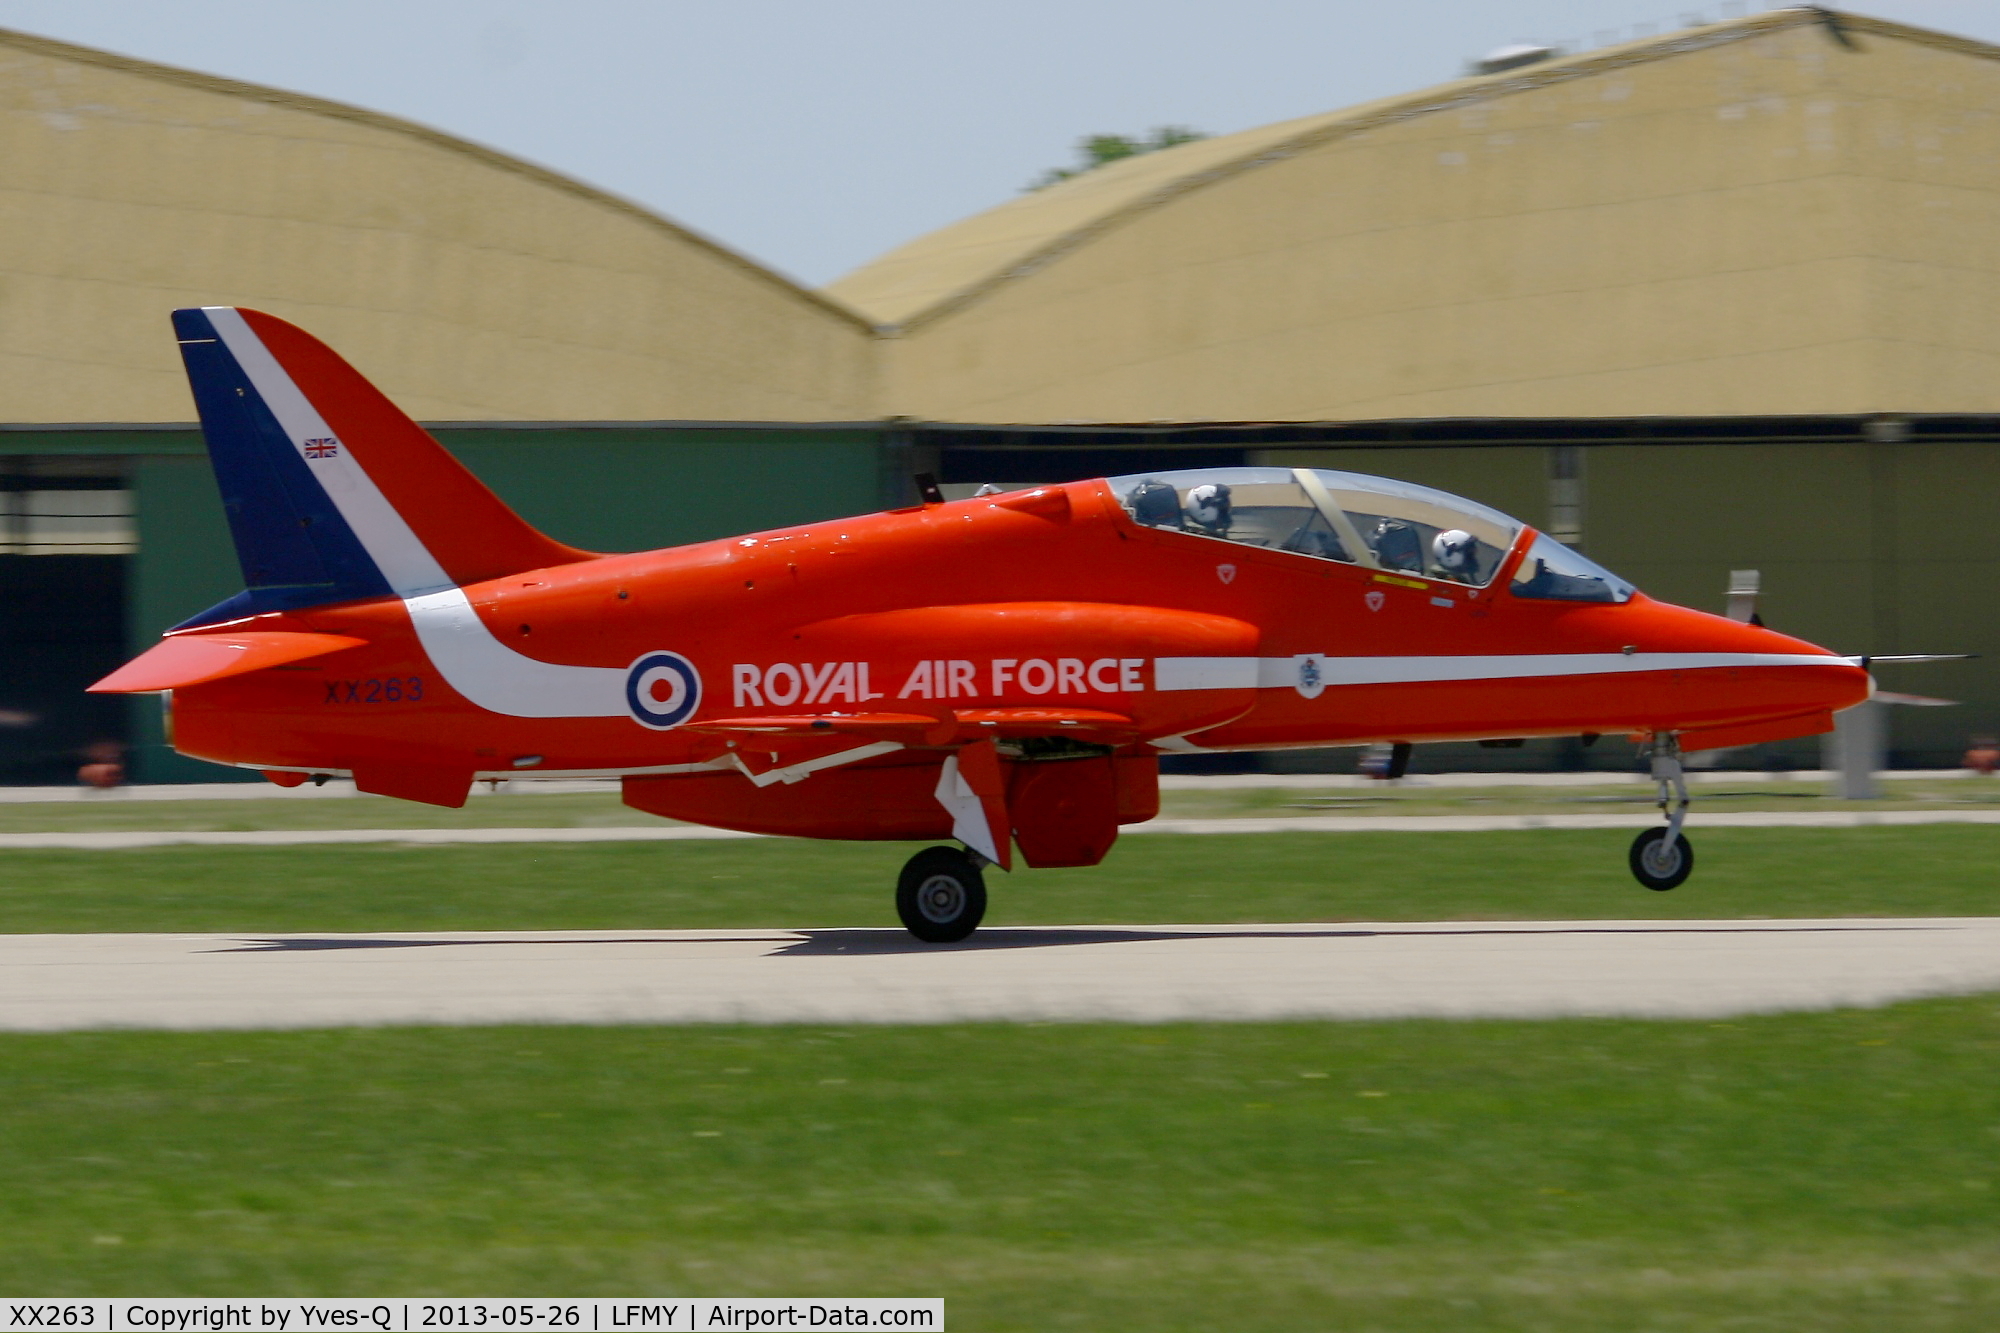 XX263, 1978 Hawker Siddeley Hawk T.1A C/N 099/312099, Red Arrow Hawker Siddeley Hawk T.1A (XX263), Take off Rwy 34, Salon De Provence Air Base 701 (LFMY)